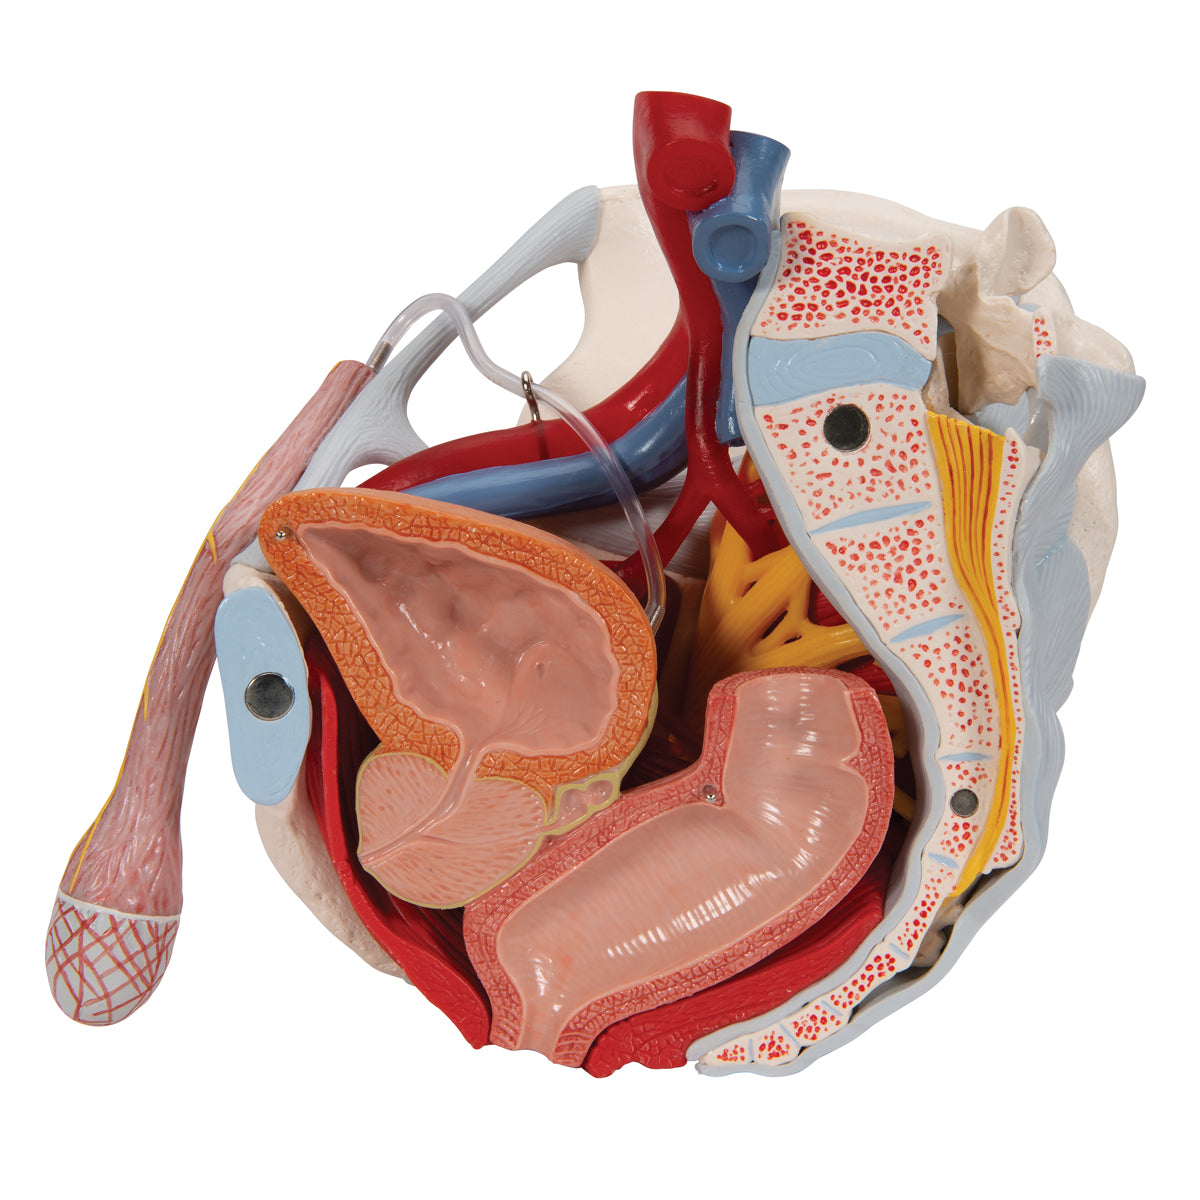 Bækkenmodel der viser bækken-bunden, kønsorganer, ledbånd, nerver og blodkar hos manden